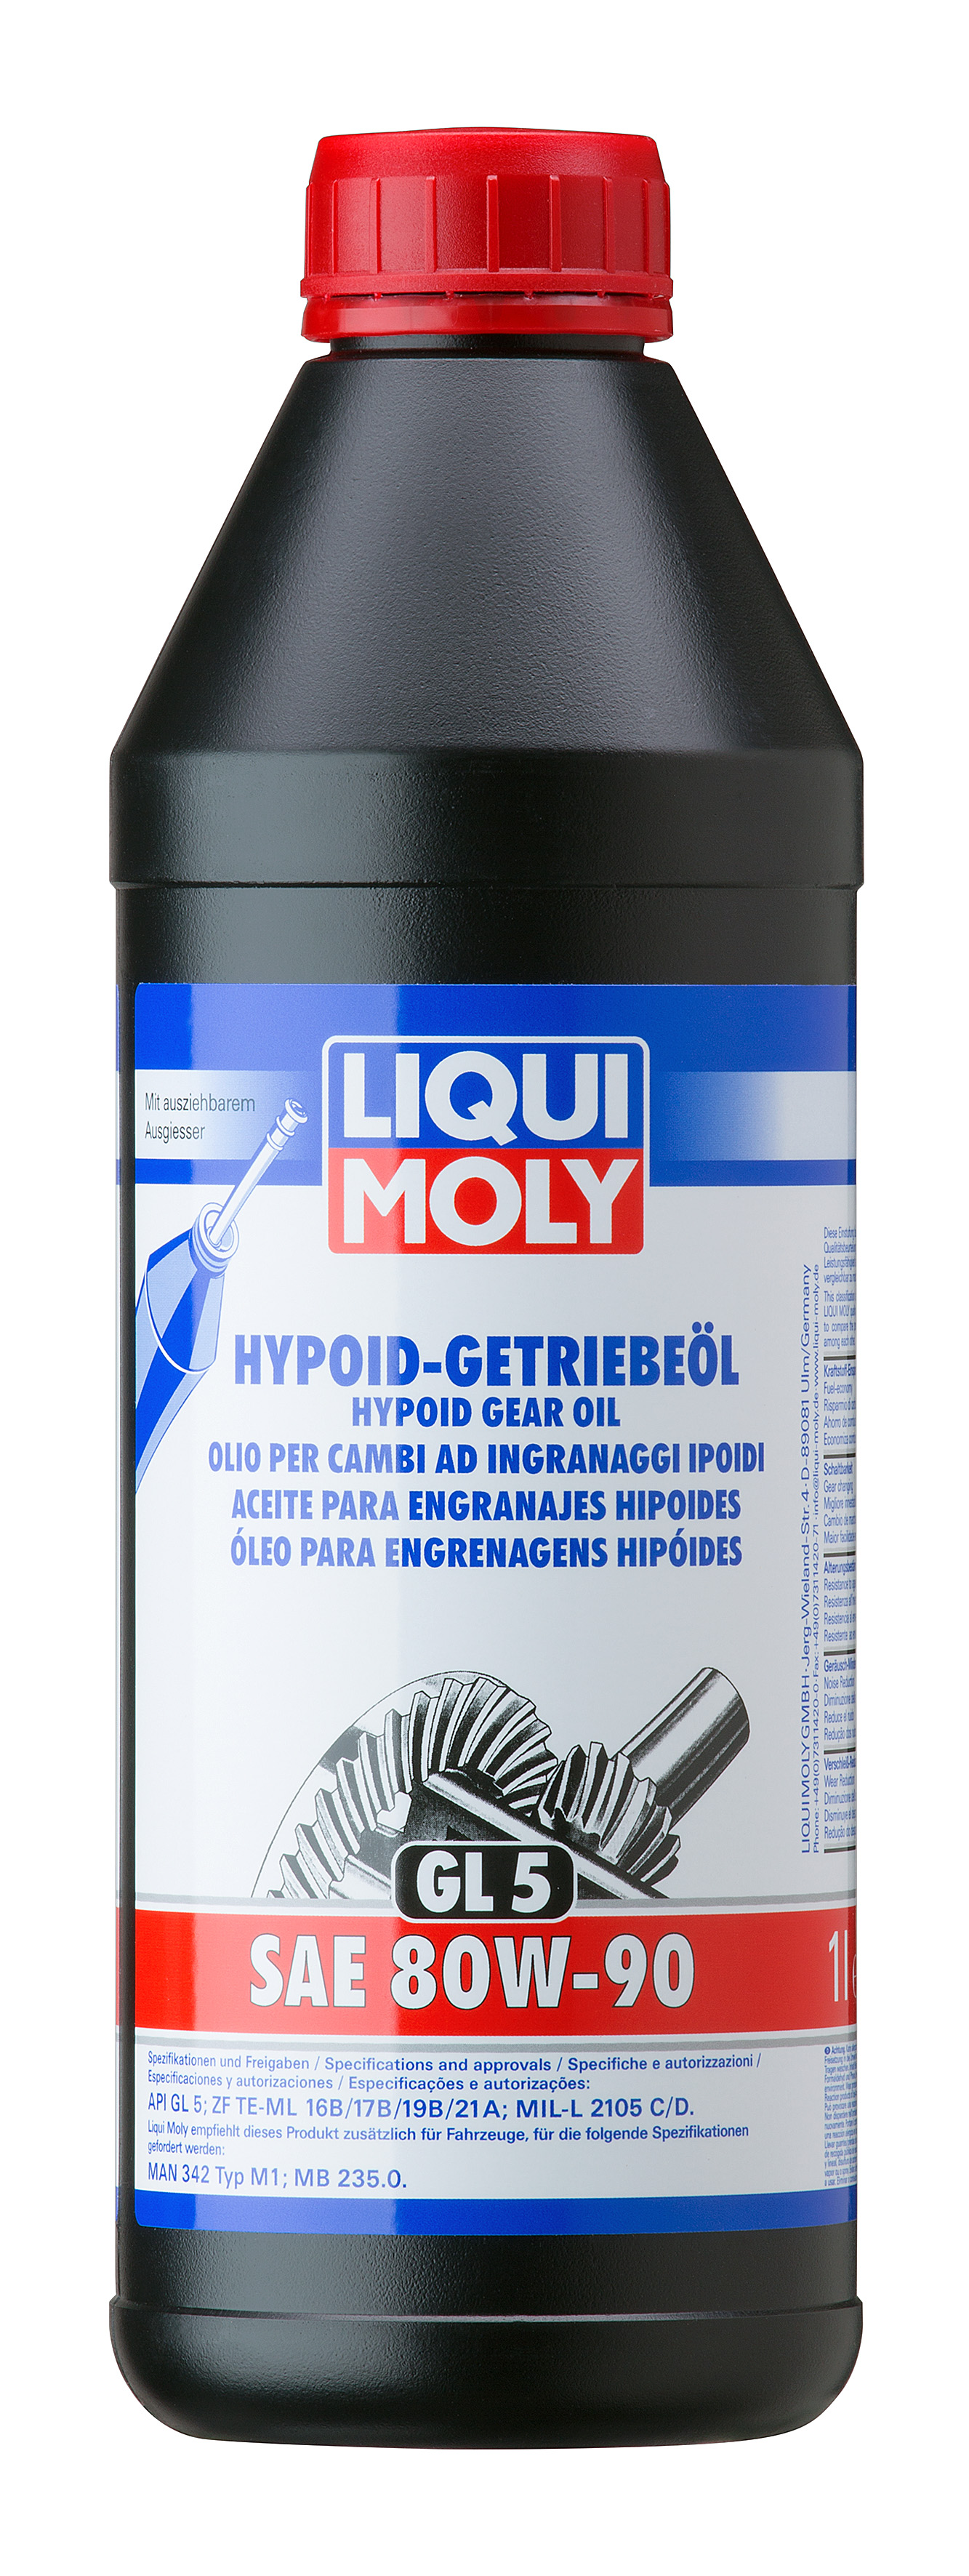 Liqui Moly 4406 Hypoid-Getriebeöl (GL5) SAE 80W-90 1l Flasche